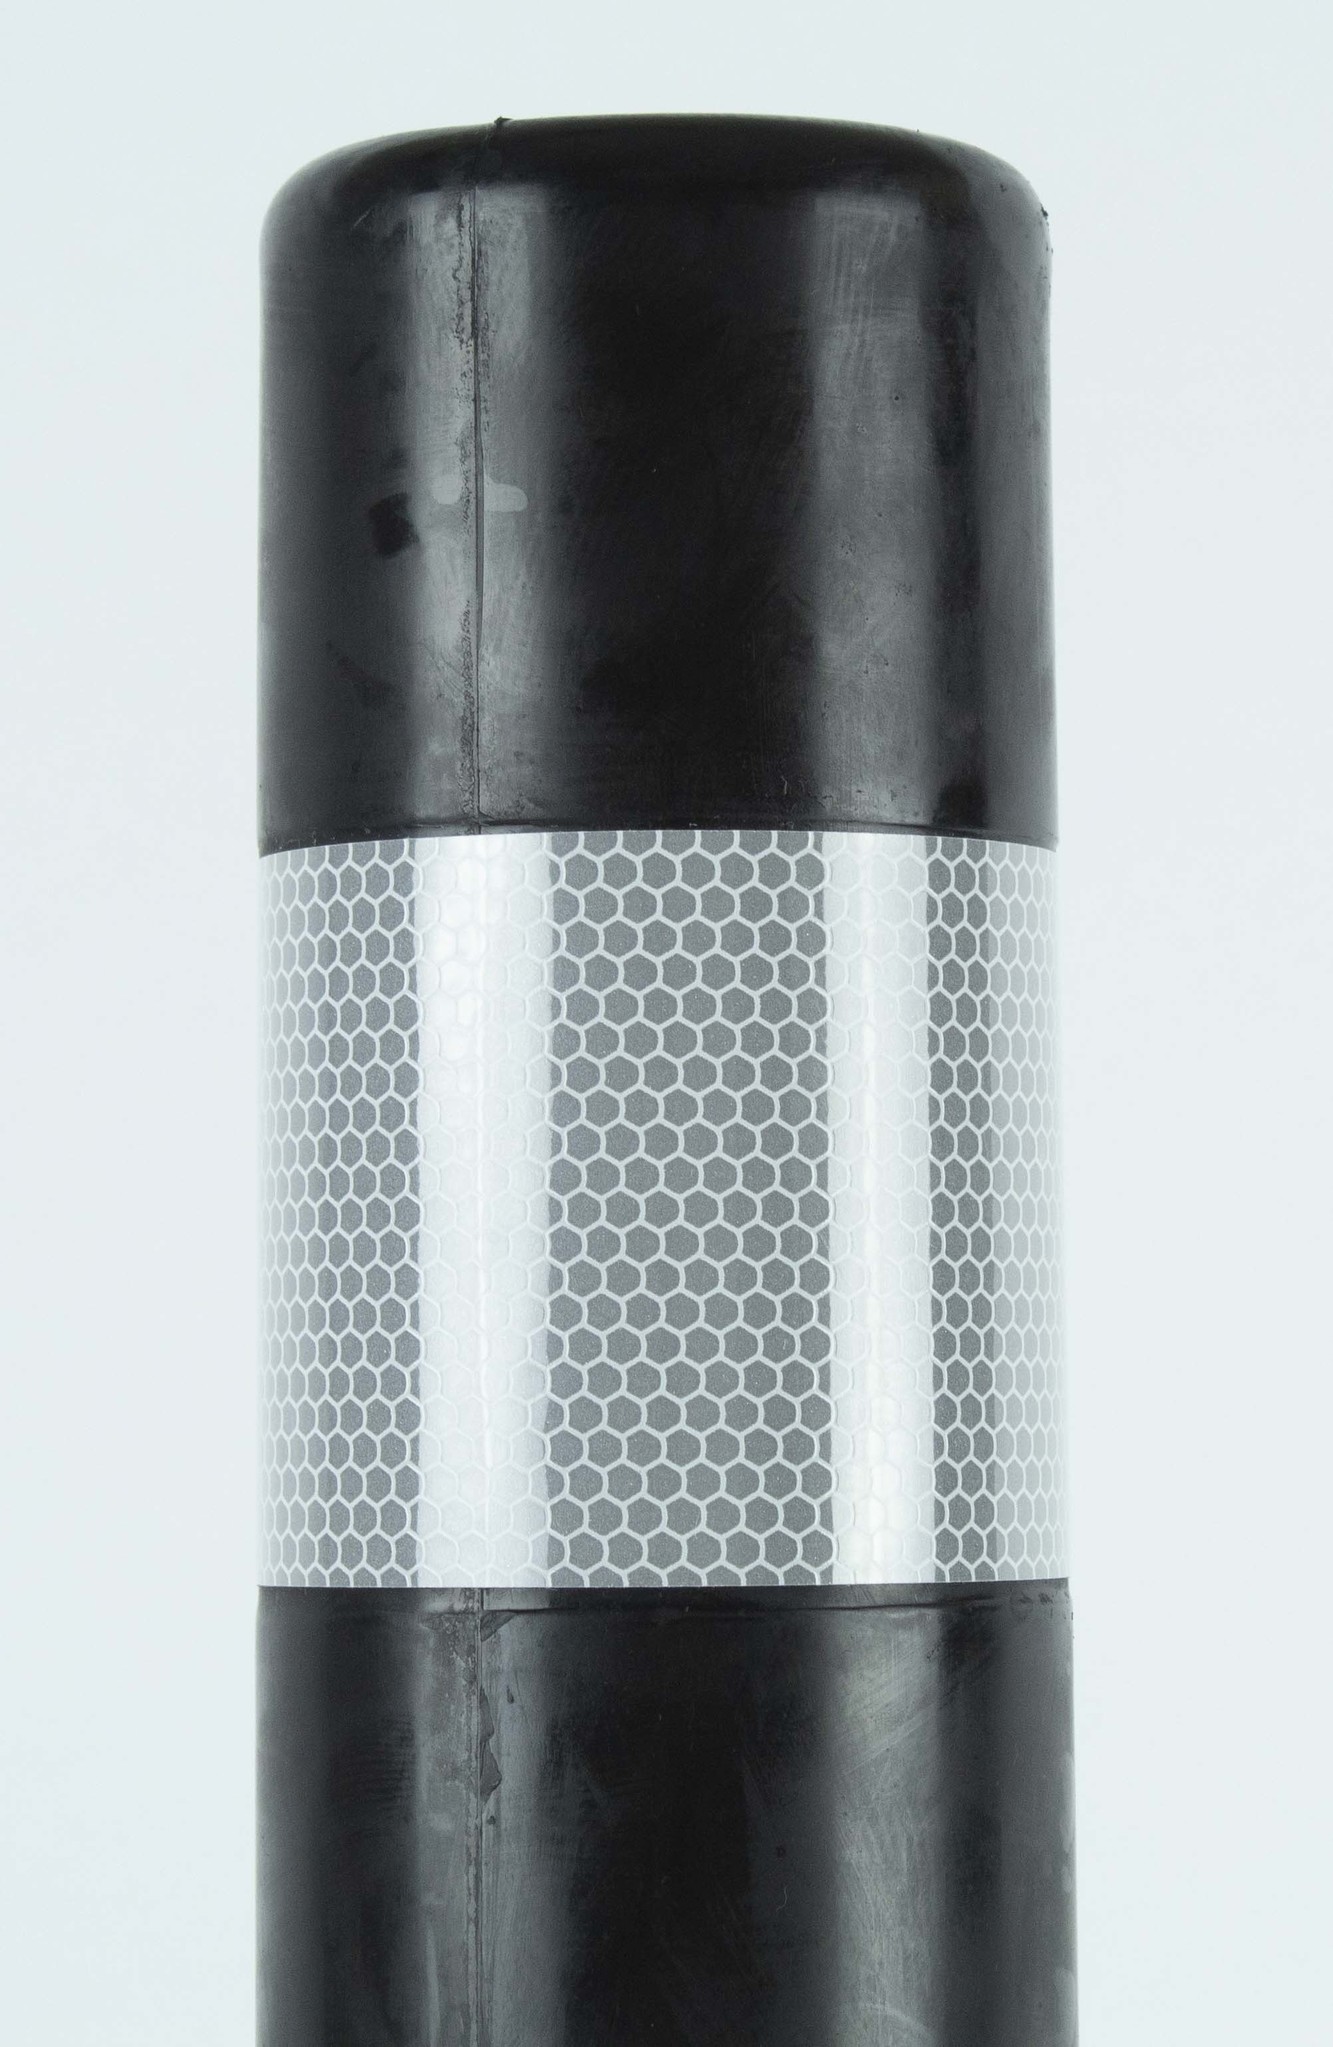 Balise autorelevable T-FLEX noir 75 cm